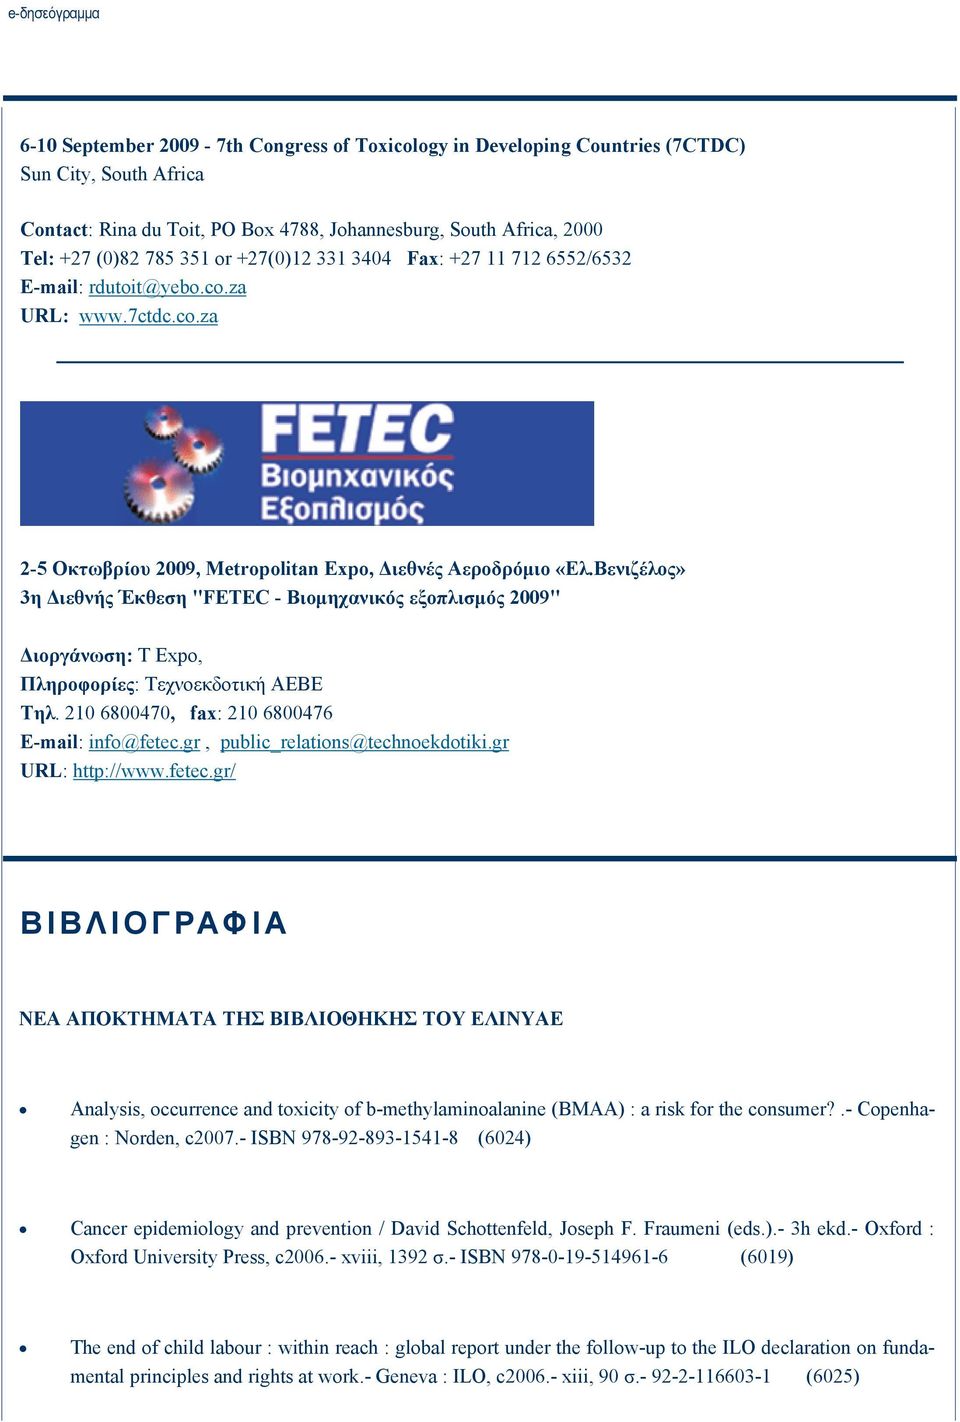 Βενιζέλος» 3η Διεθνής Έκθεση "FETEC - Βιομηχανικός εξοπλισμός 2009" Διοργάνωση: T Expo, Πληροφορίες: Τεχνοεκδοτική ΑΕΒΕ Τηλ. 210 6800470, fax: 210 6800476 E-mail: info@fetec.